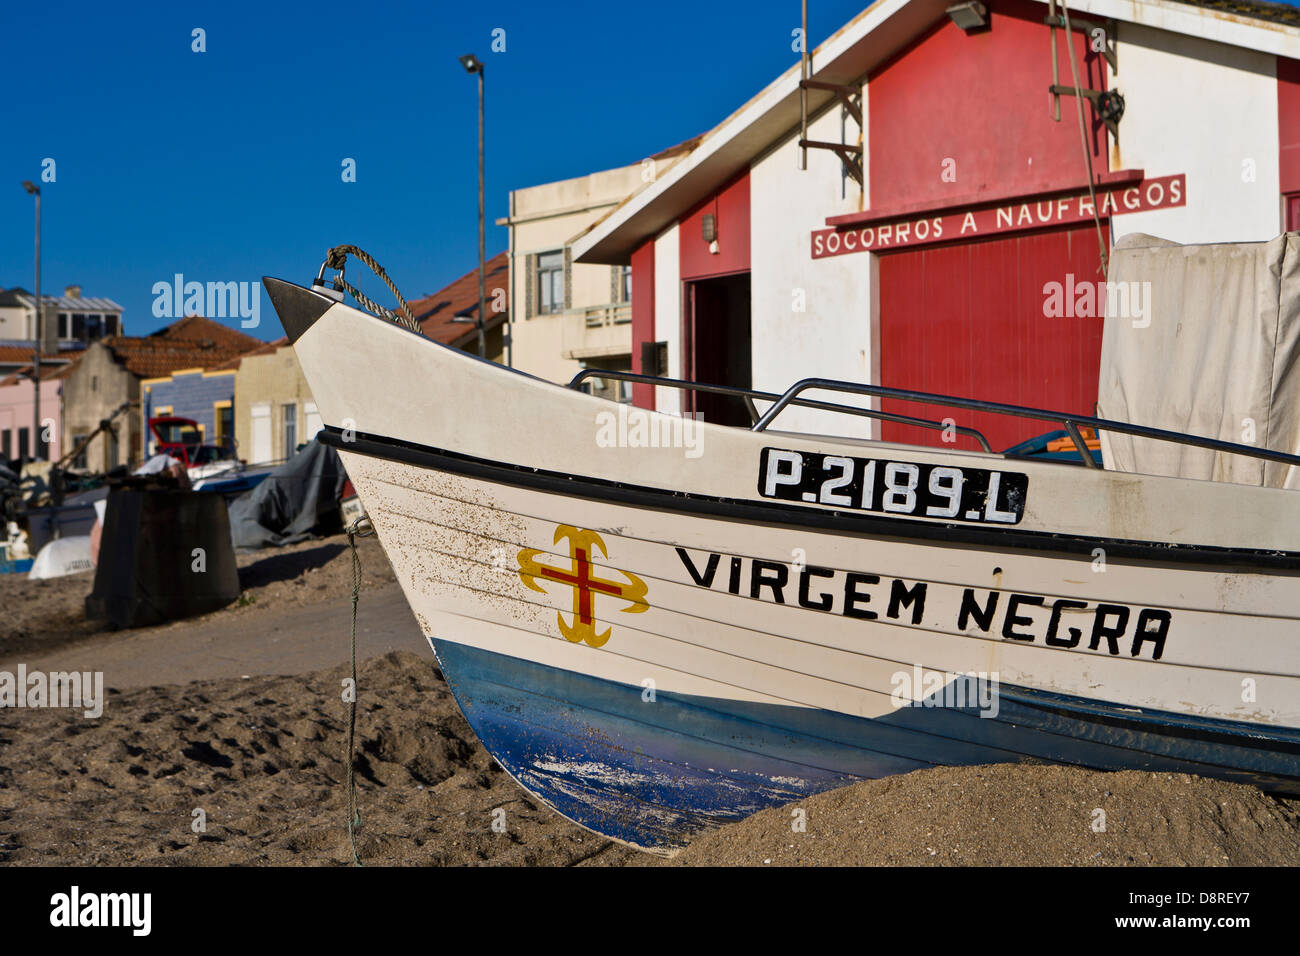 Boat in the Aguda beach, Vila Nova de Gaia Portugal Stock Photo